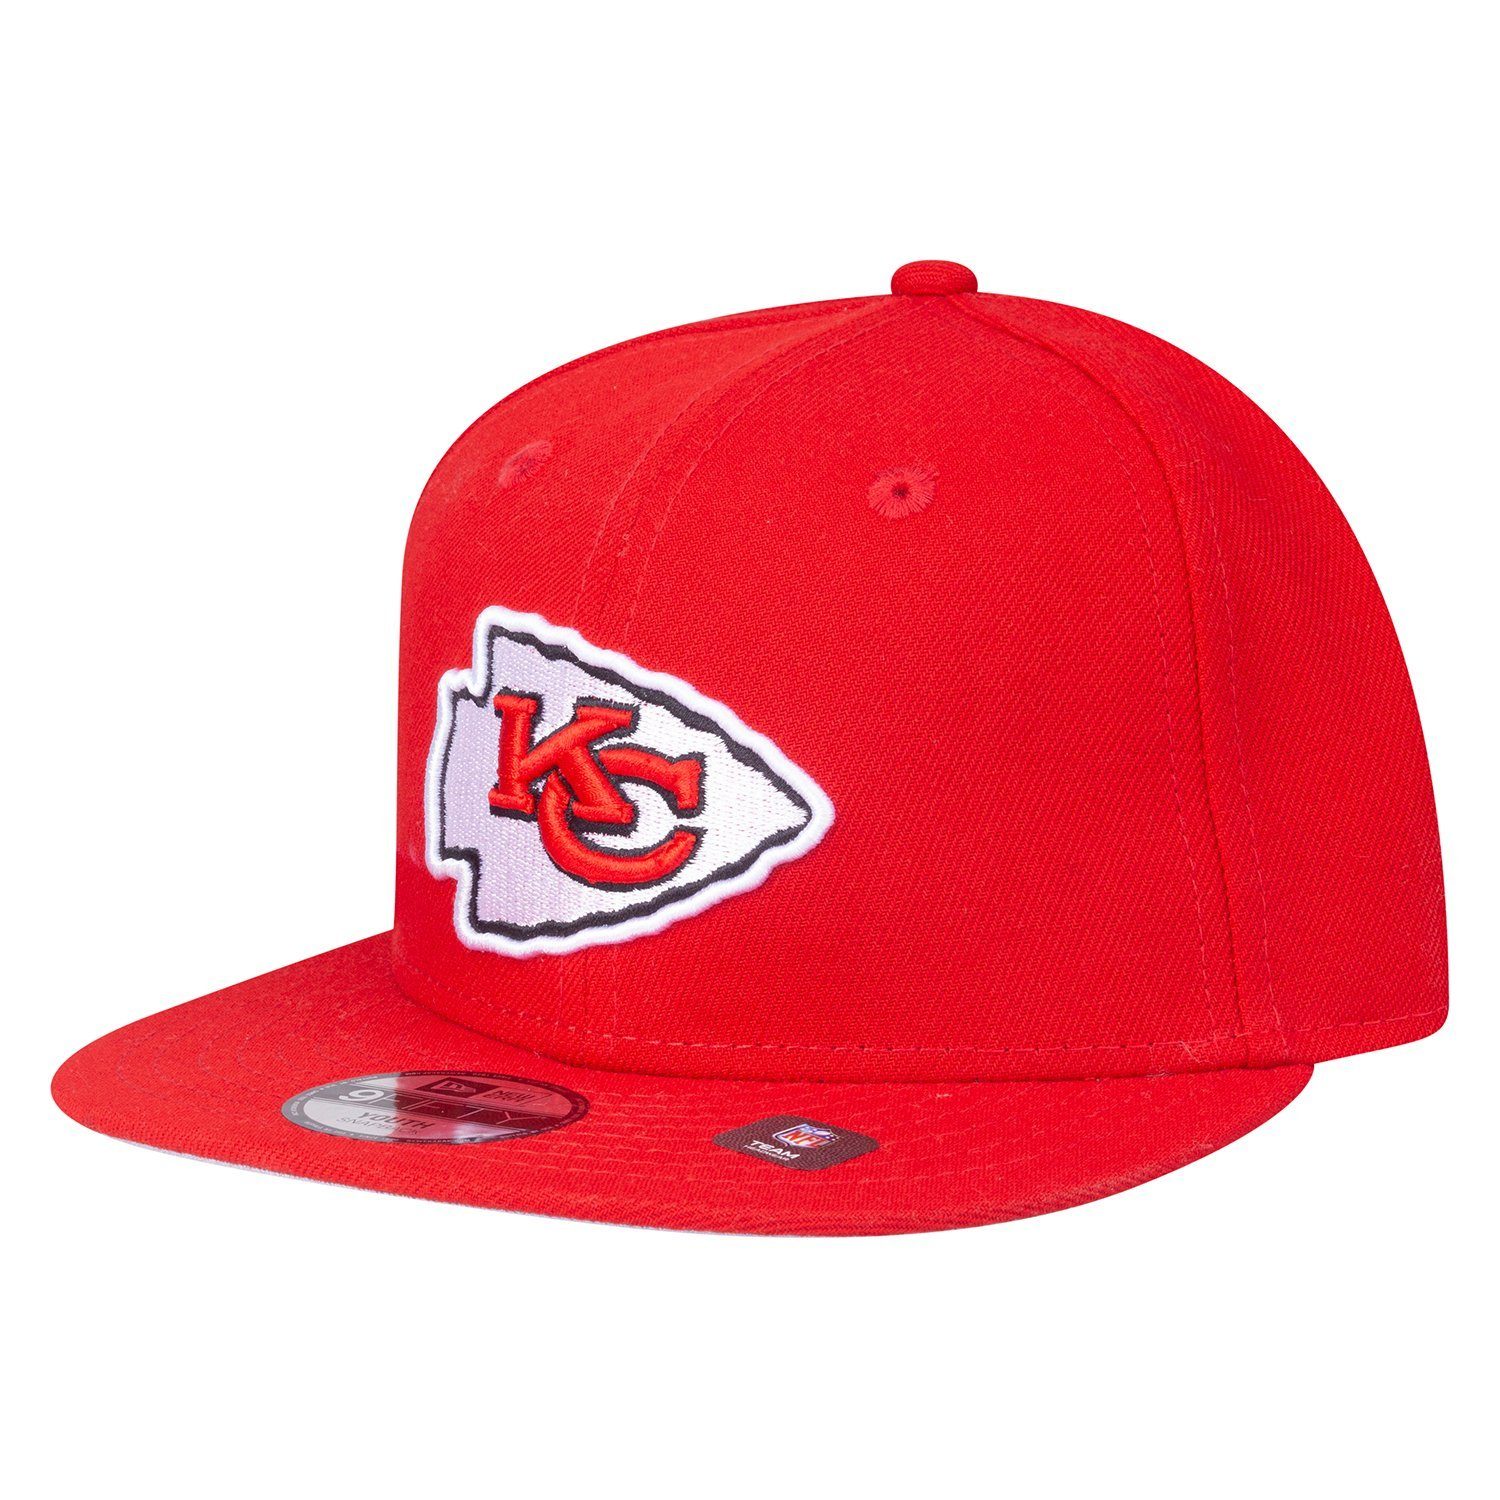 New Era Baseball Cap 9Fifty Jugend NFL Teams Kansas City Chiefs RED